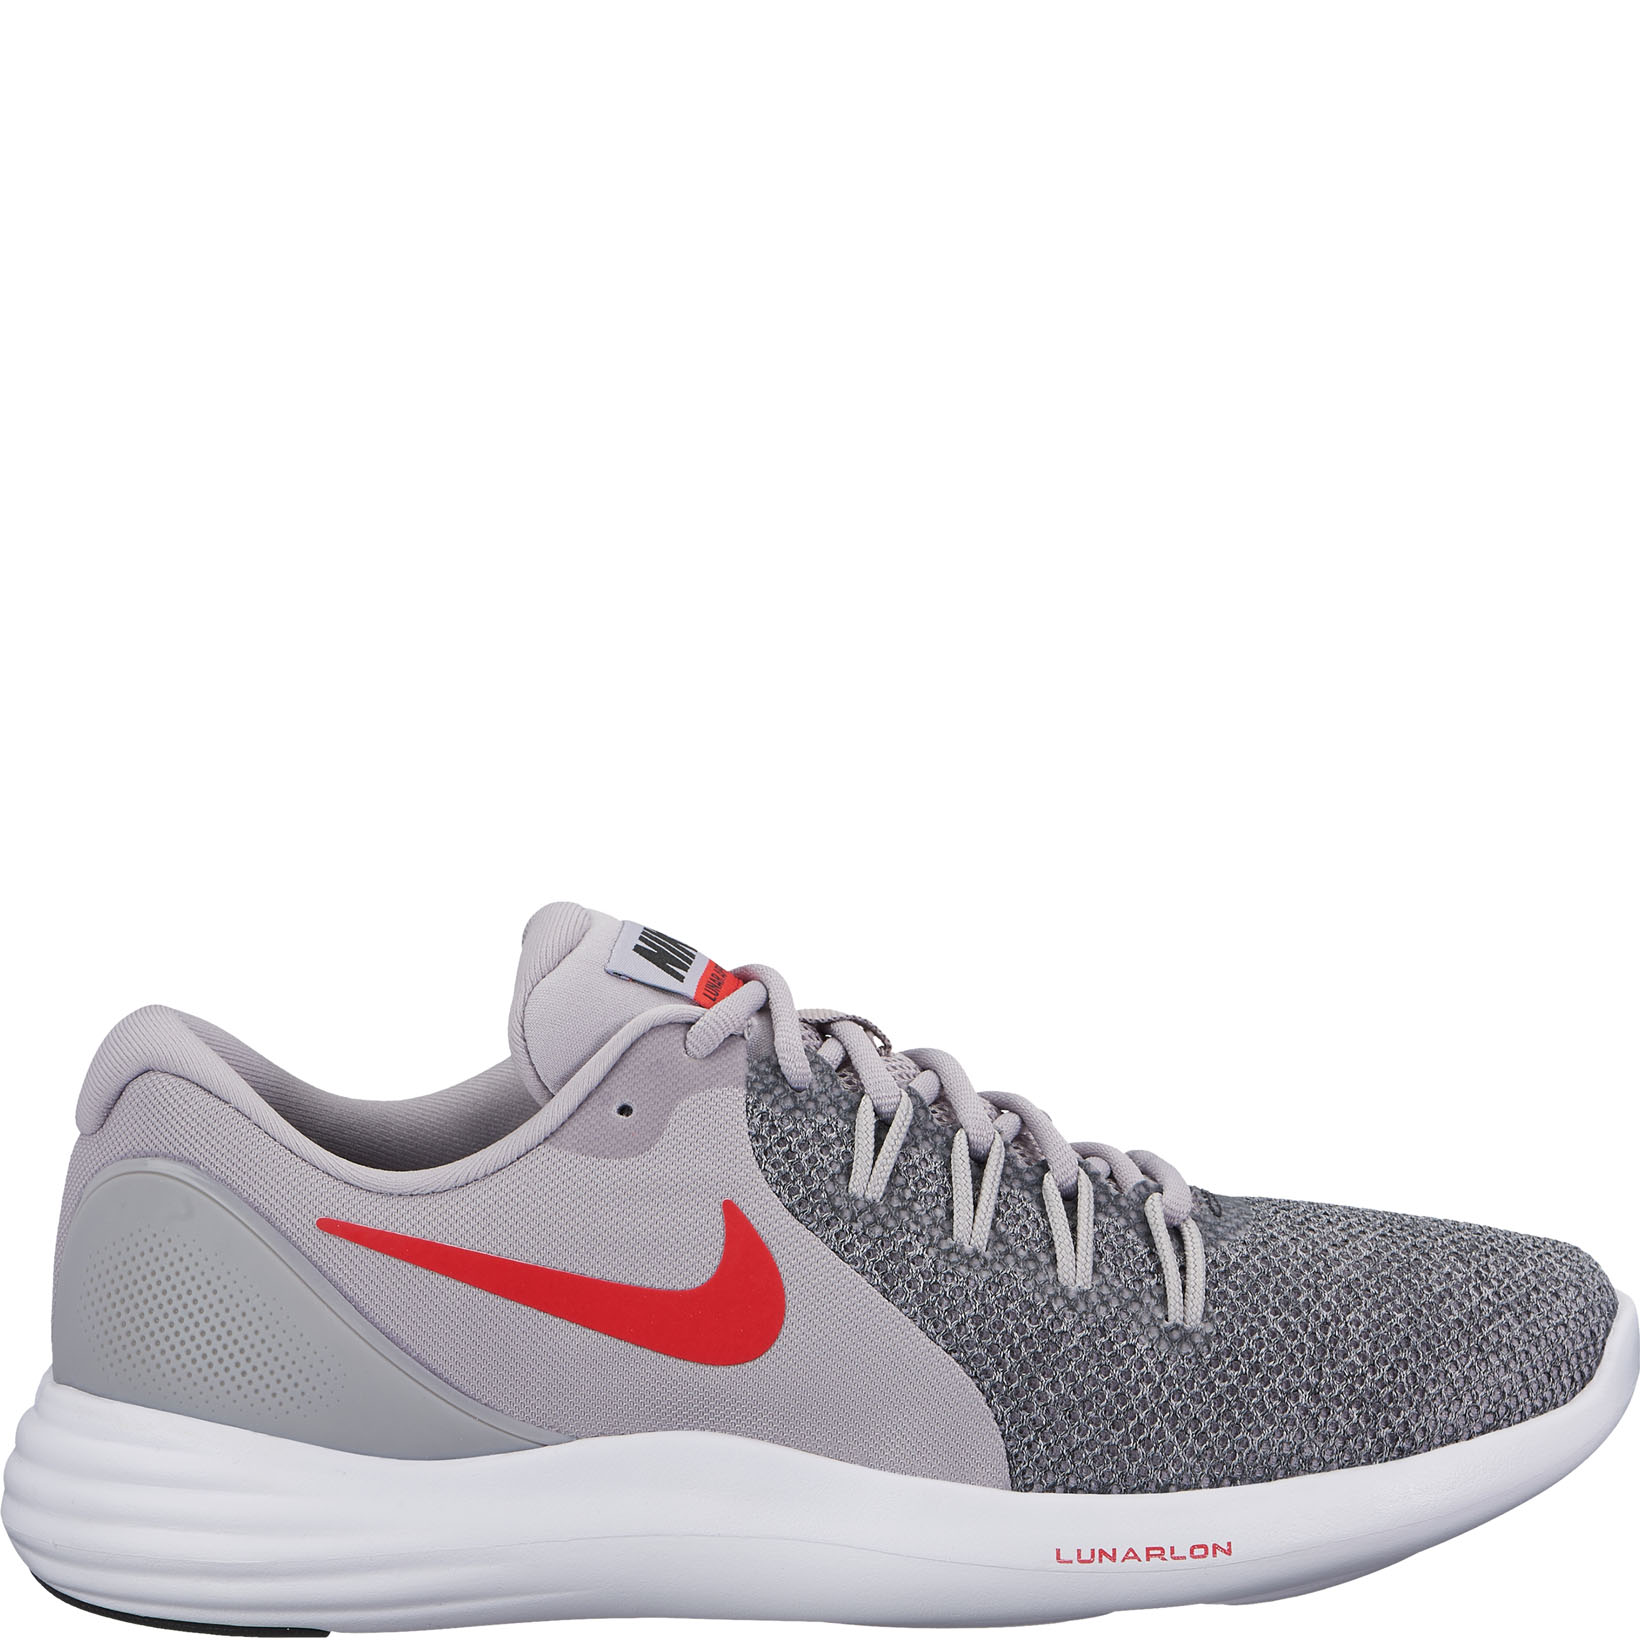 Мужские кроссовки Nike Lunar Apparent 908987-016